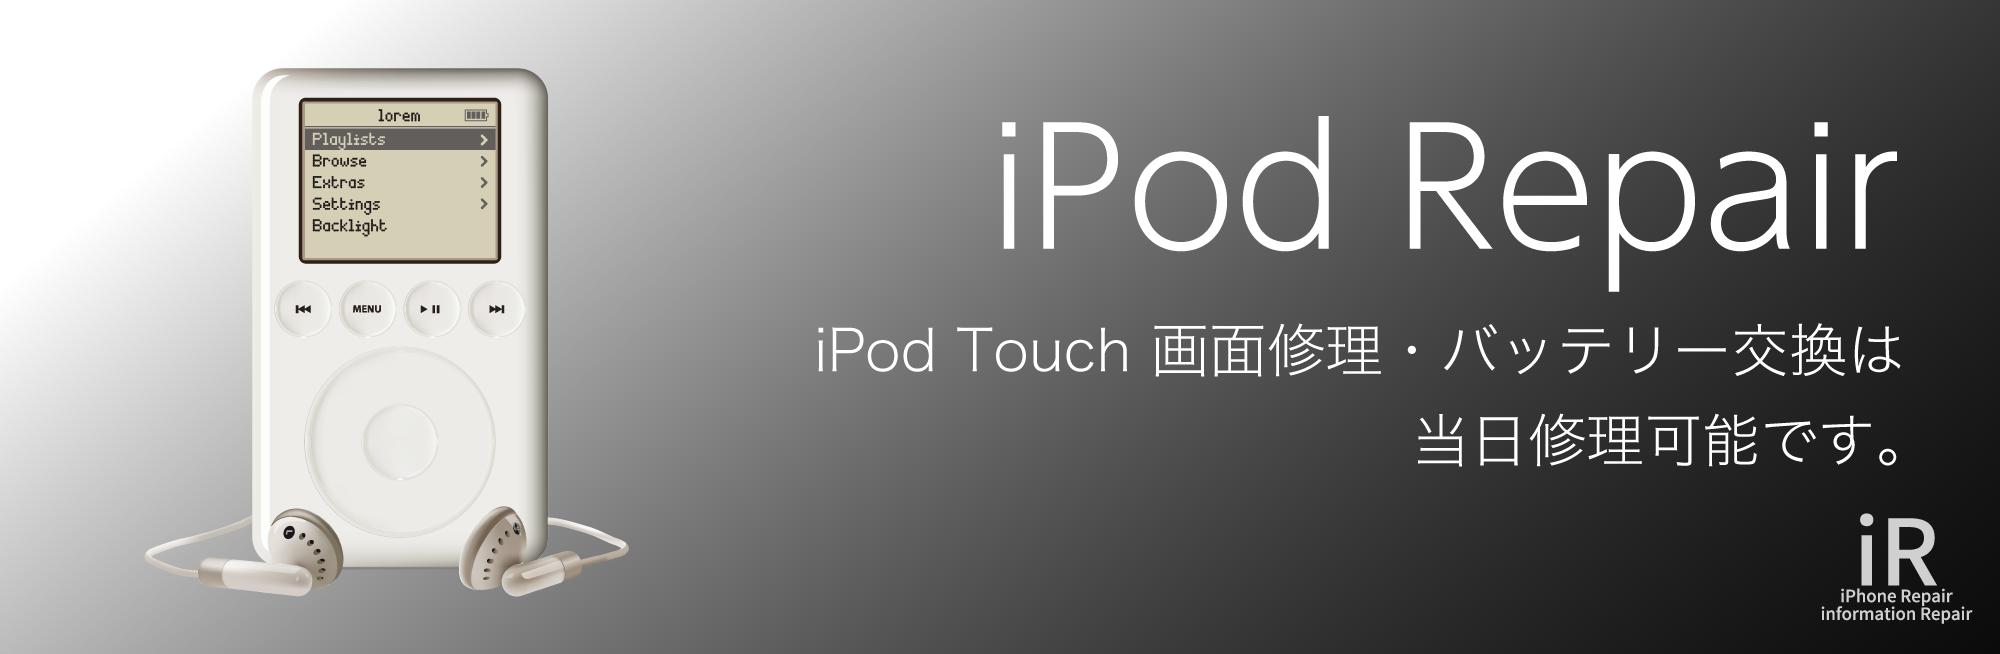 iPhone修理iR福山 iPod修理価格